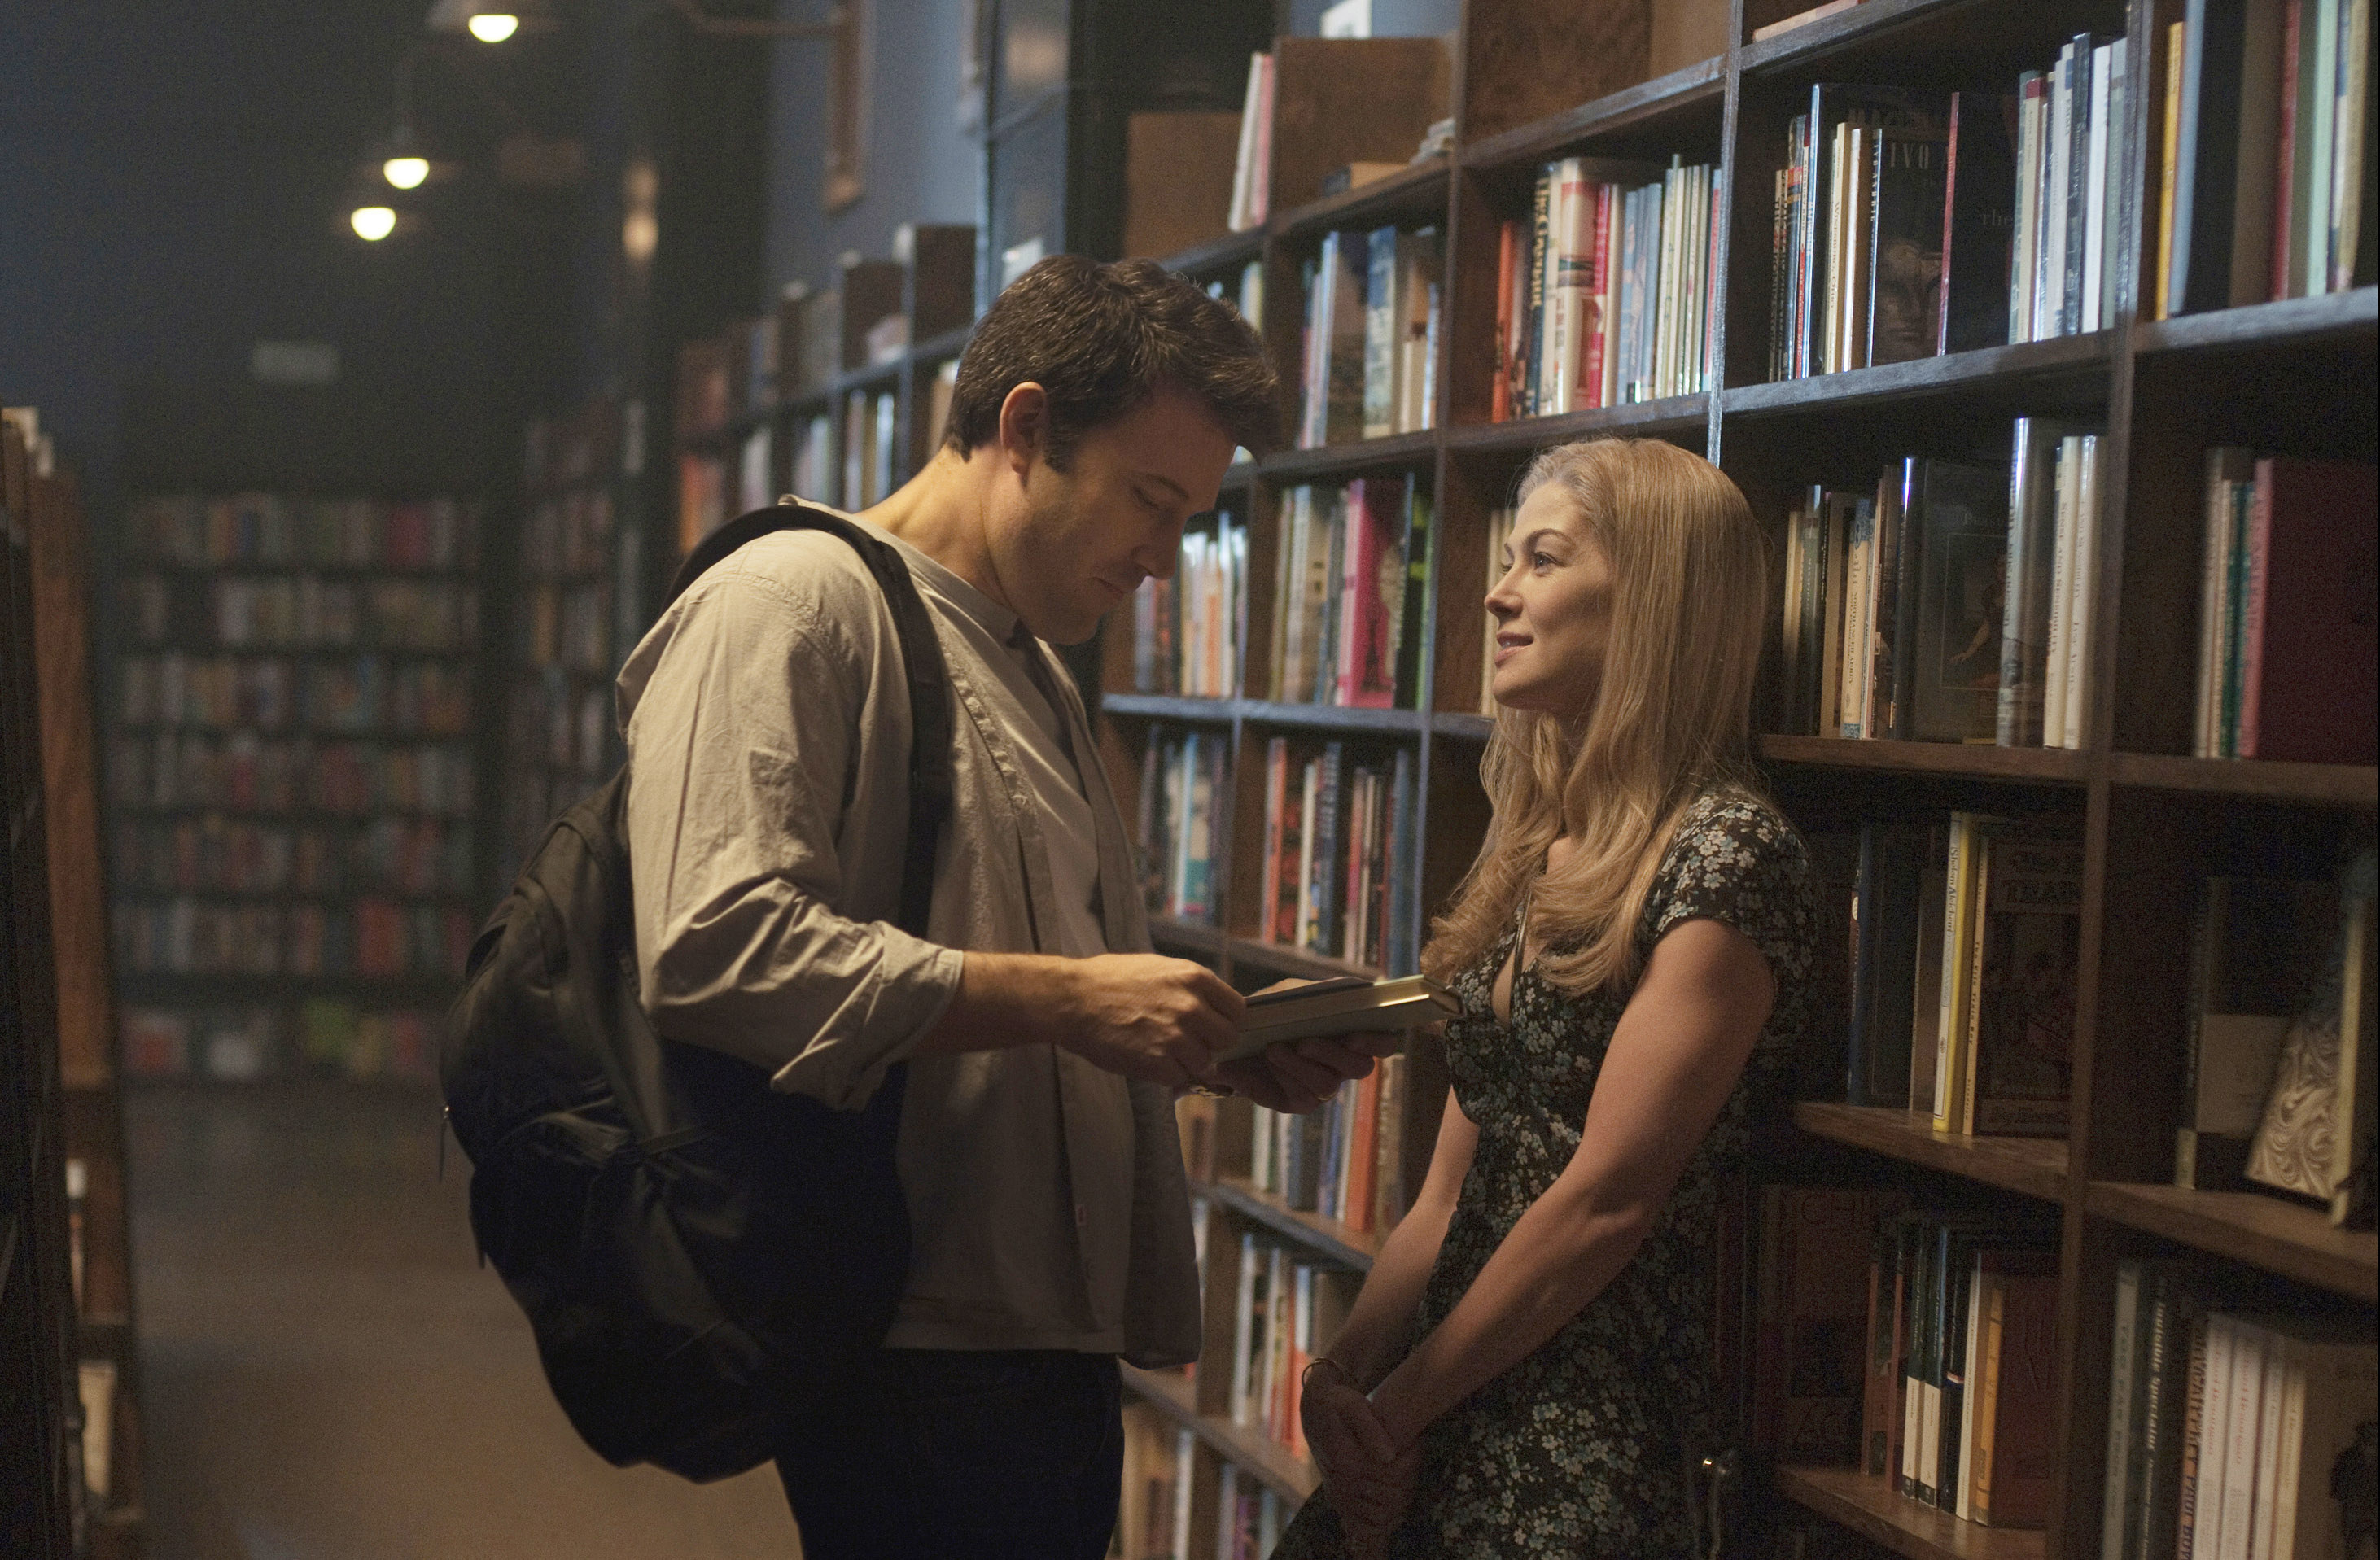 Ben Affleck and Rosamund Pike talking near a bookshelf.